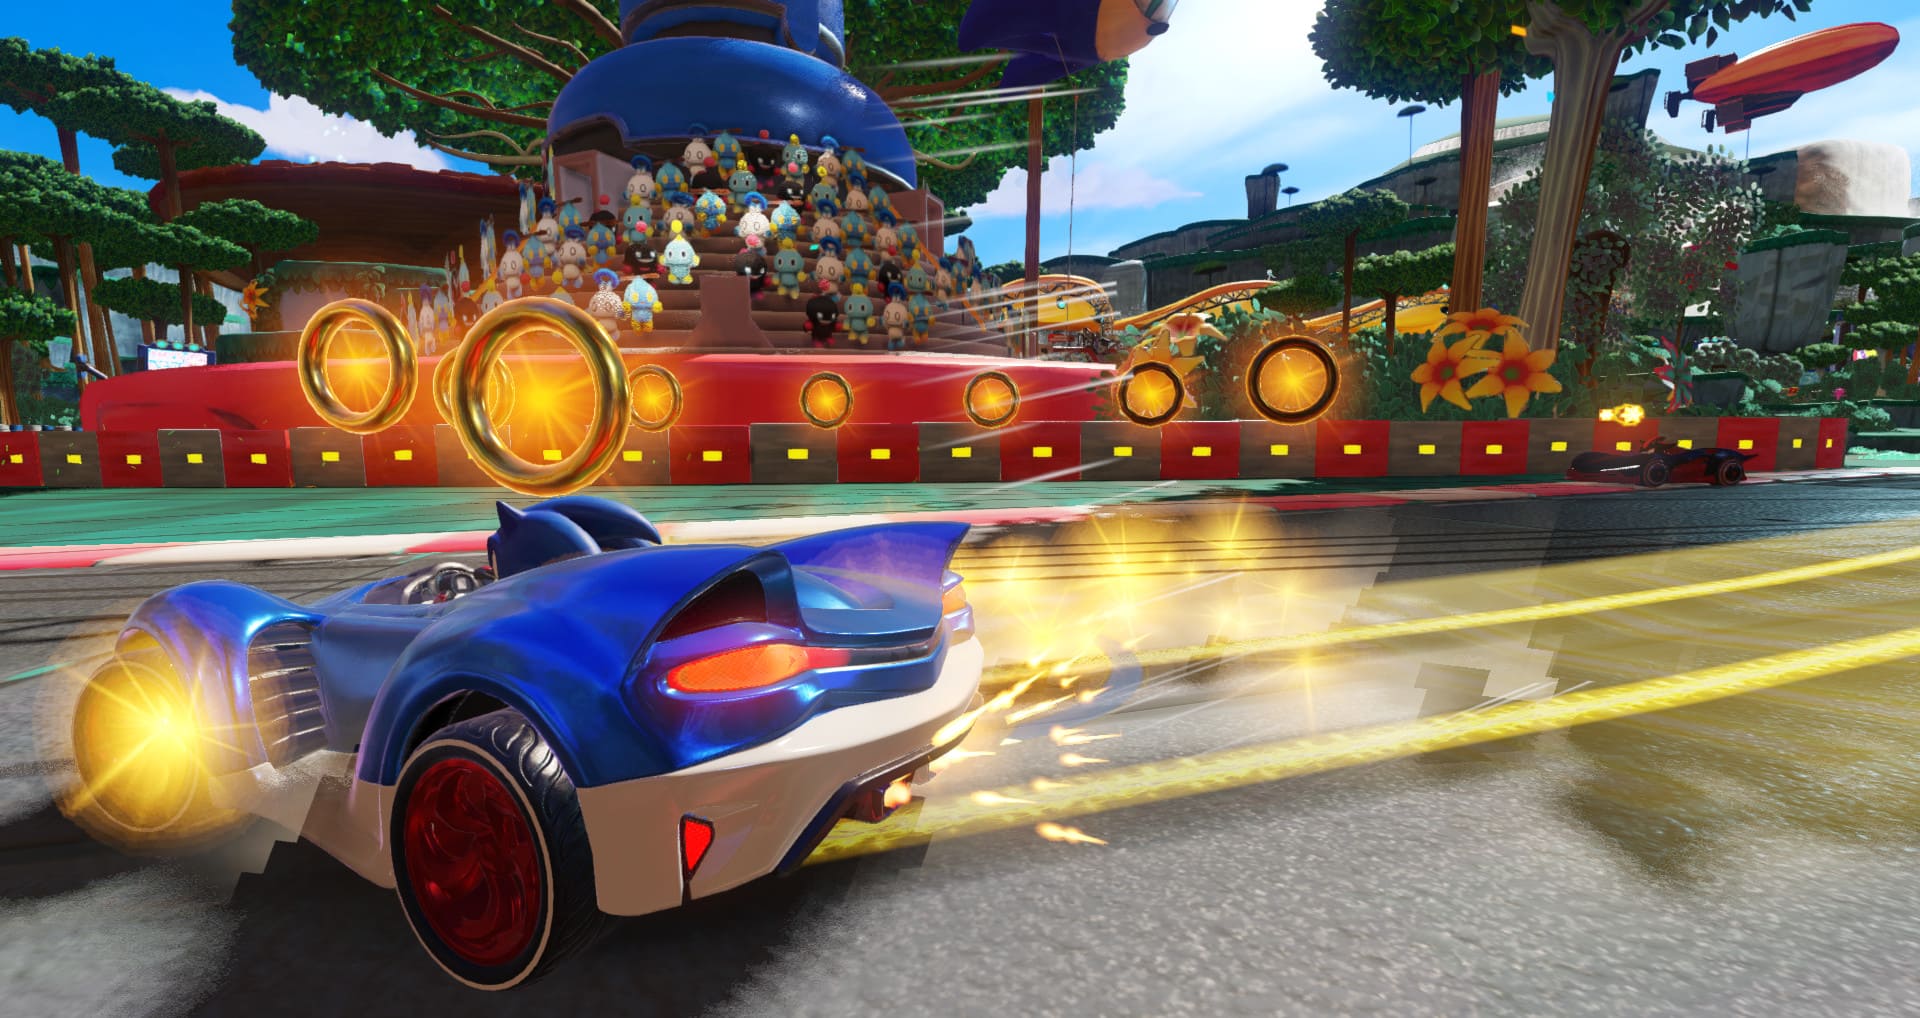 بهترین بازی های خانوادگی: Team Sonic Racing